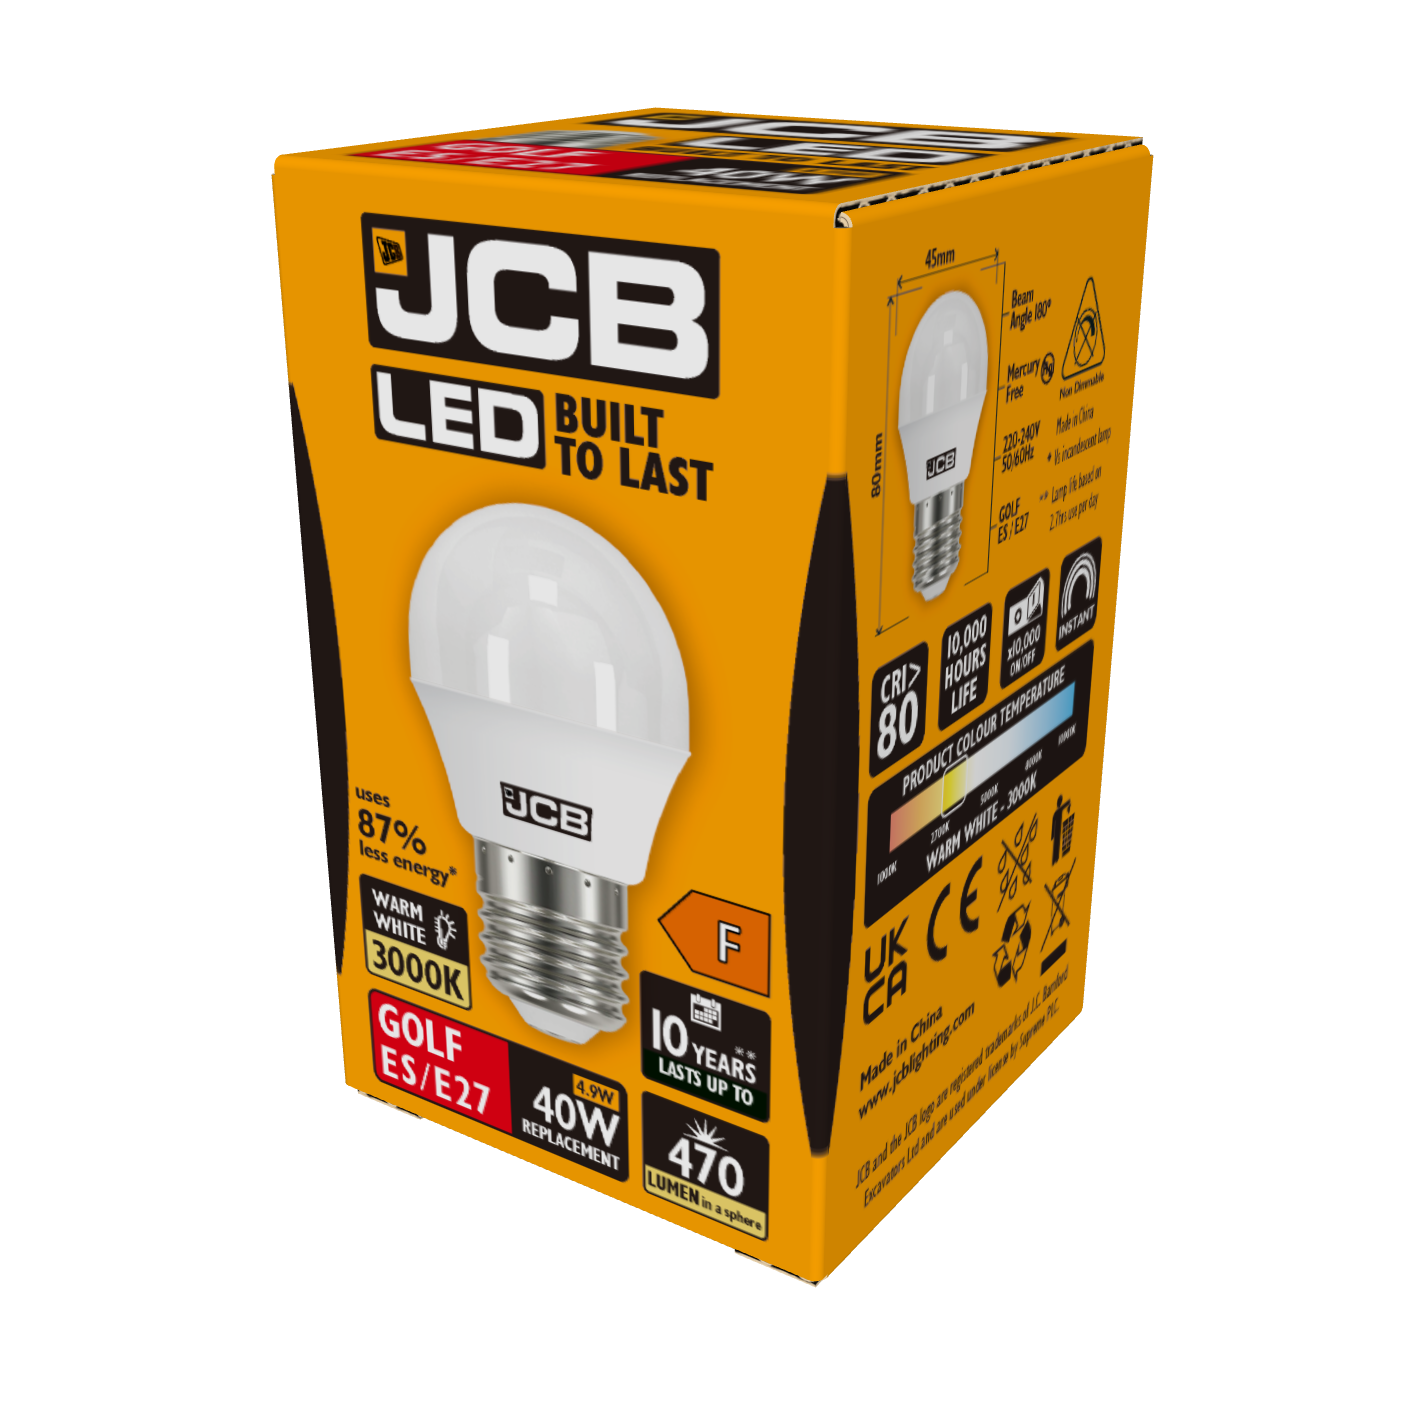 JCB LED Golf E27 (ES) 470lm 4.9W 3,000K (Warm White), Box of 1